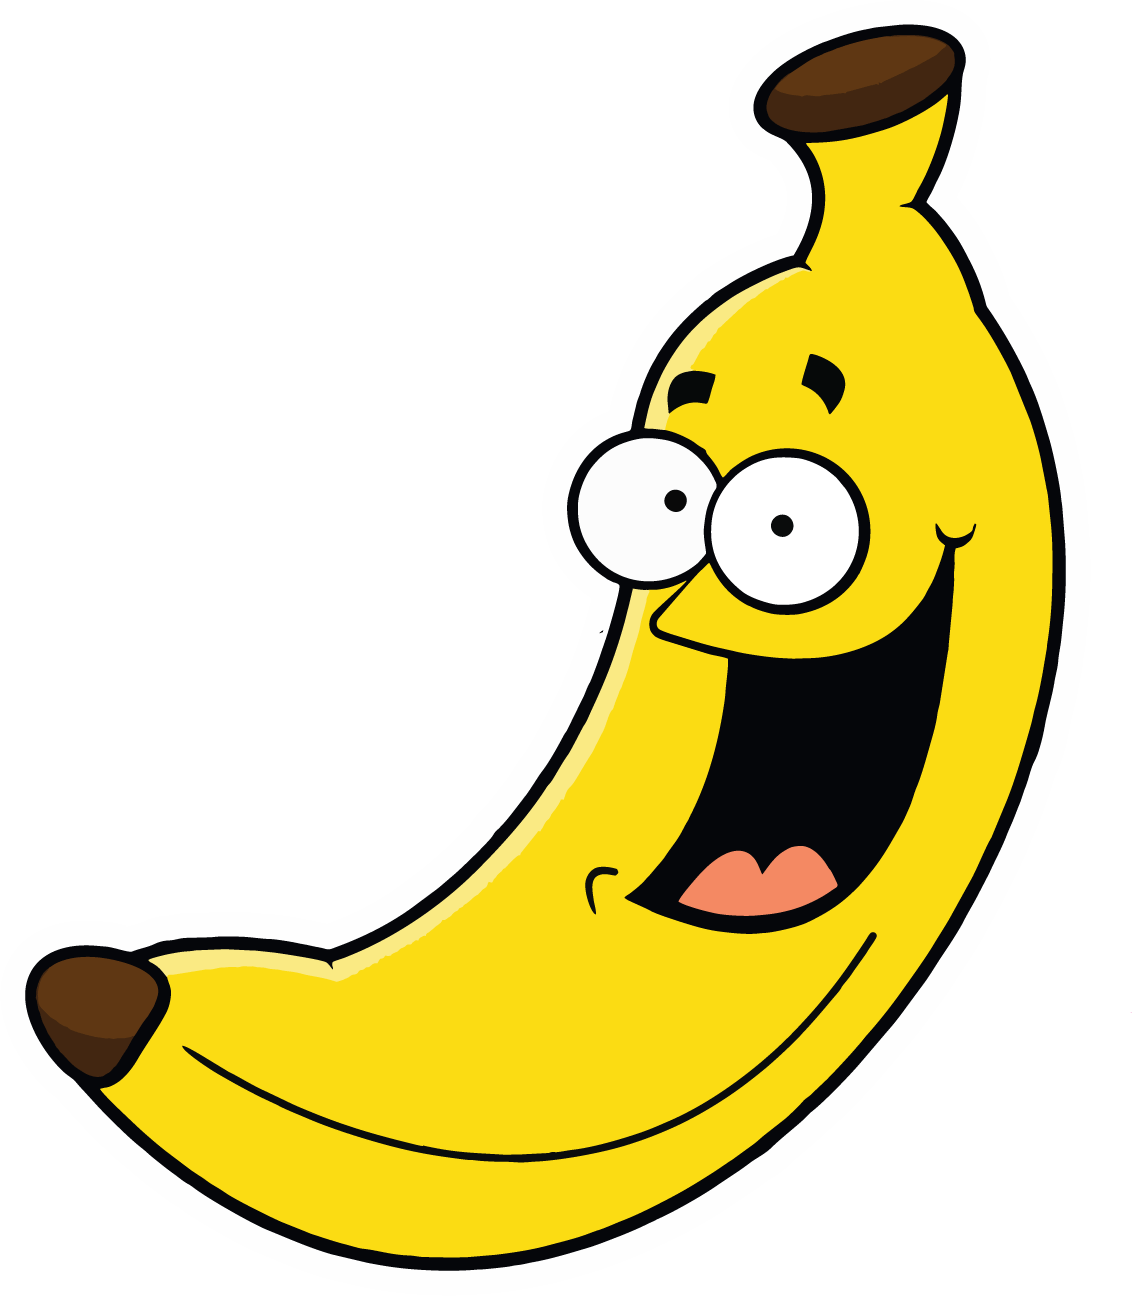 Full Menu Smiling Banana Leaf Clipart, free png download.